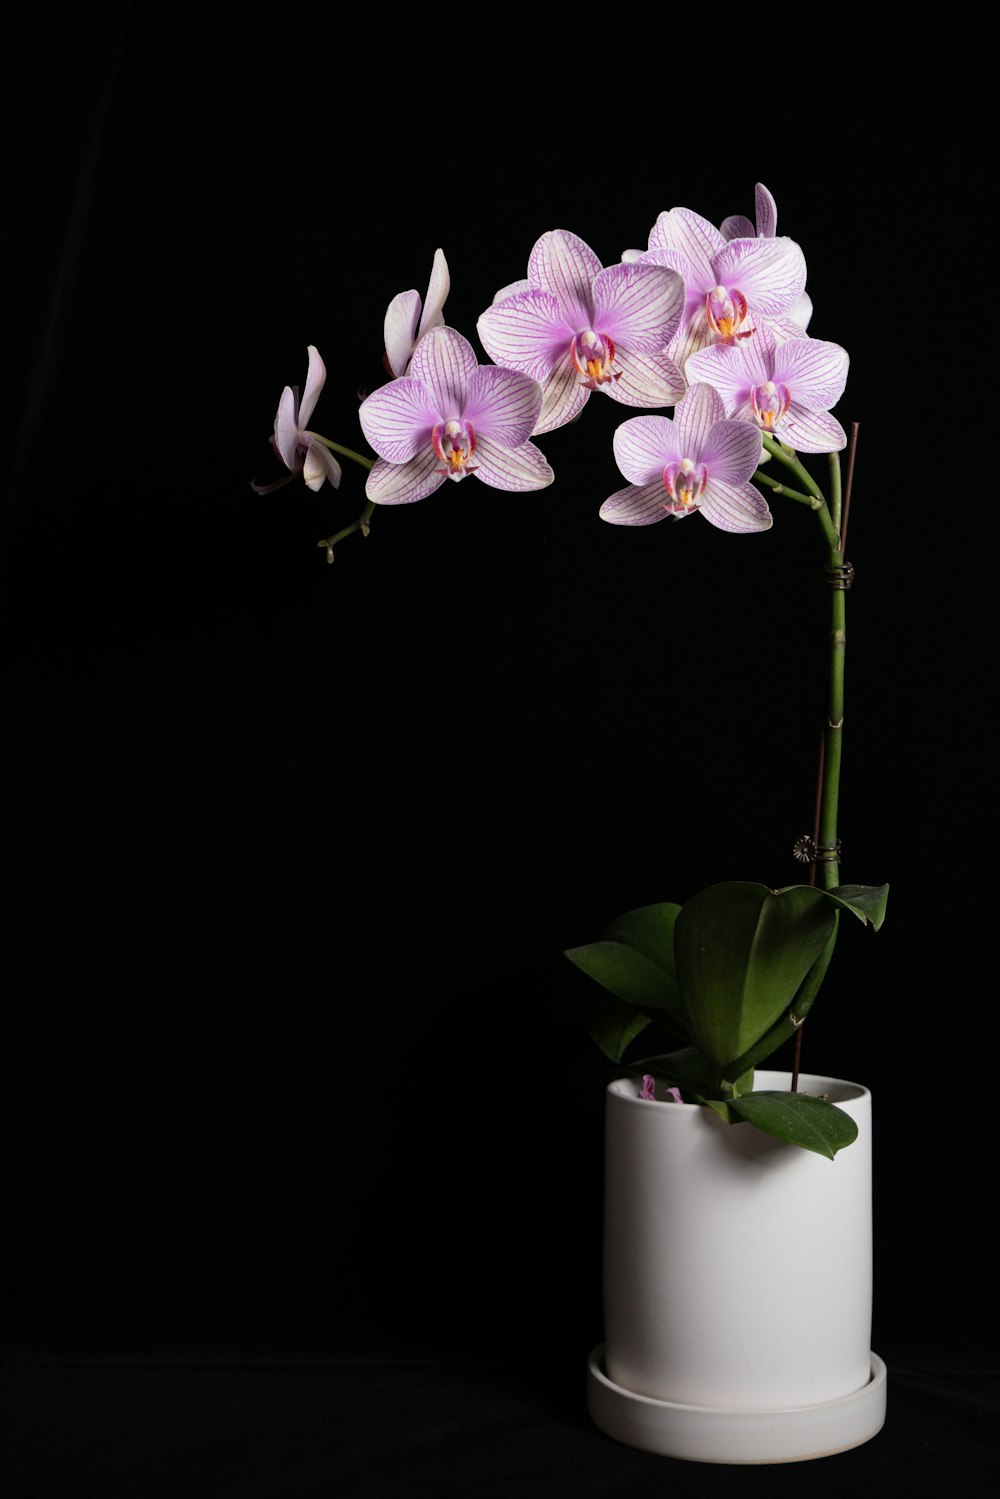 Orquídeas moradas y blancas en jarrón de cerámica blanca